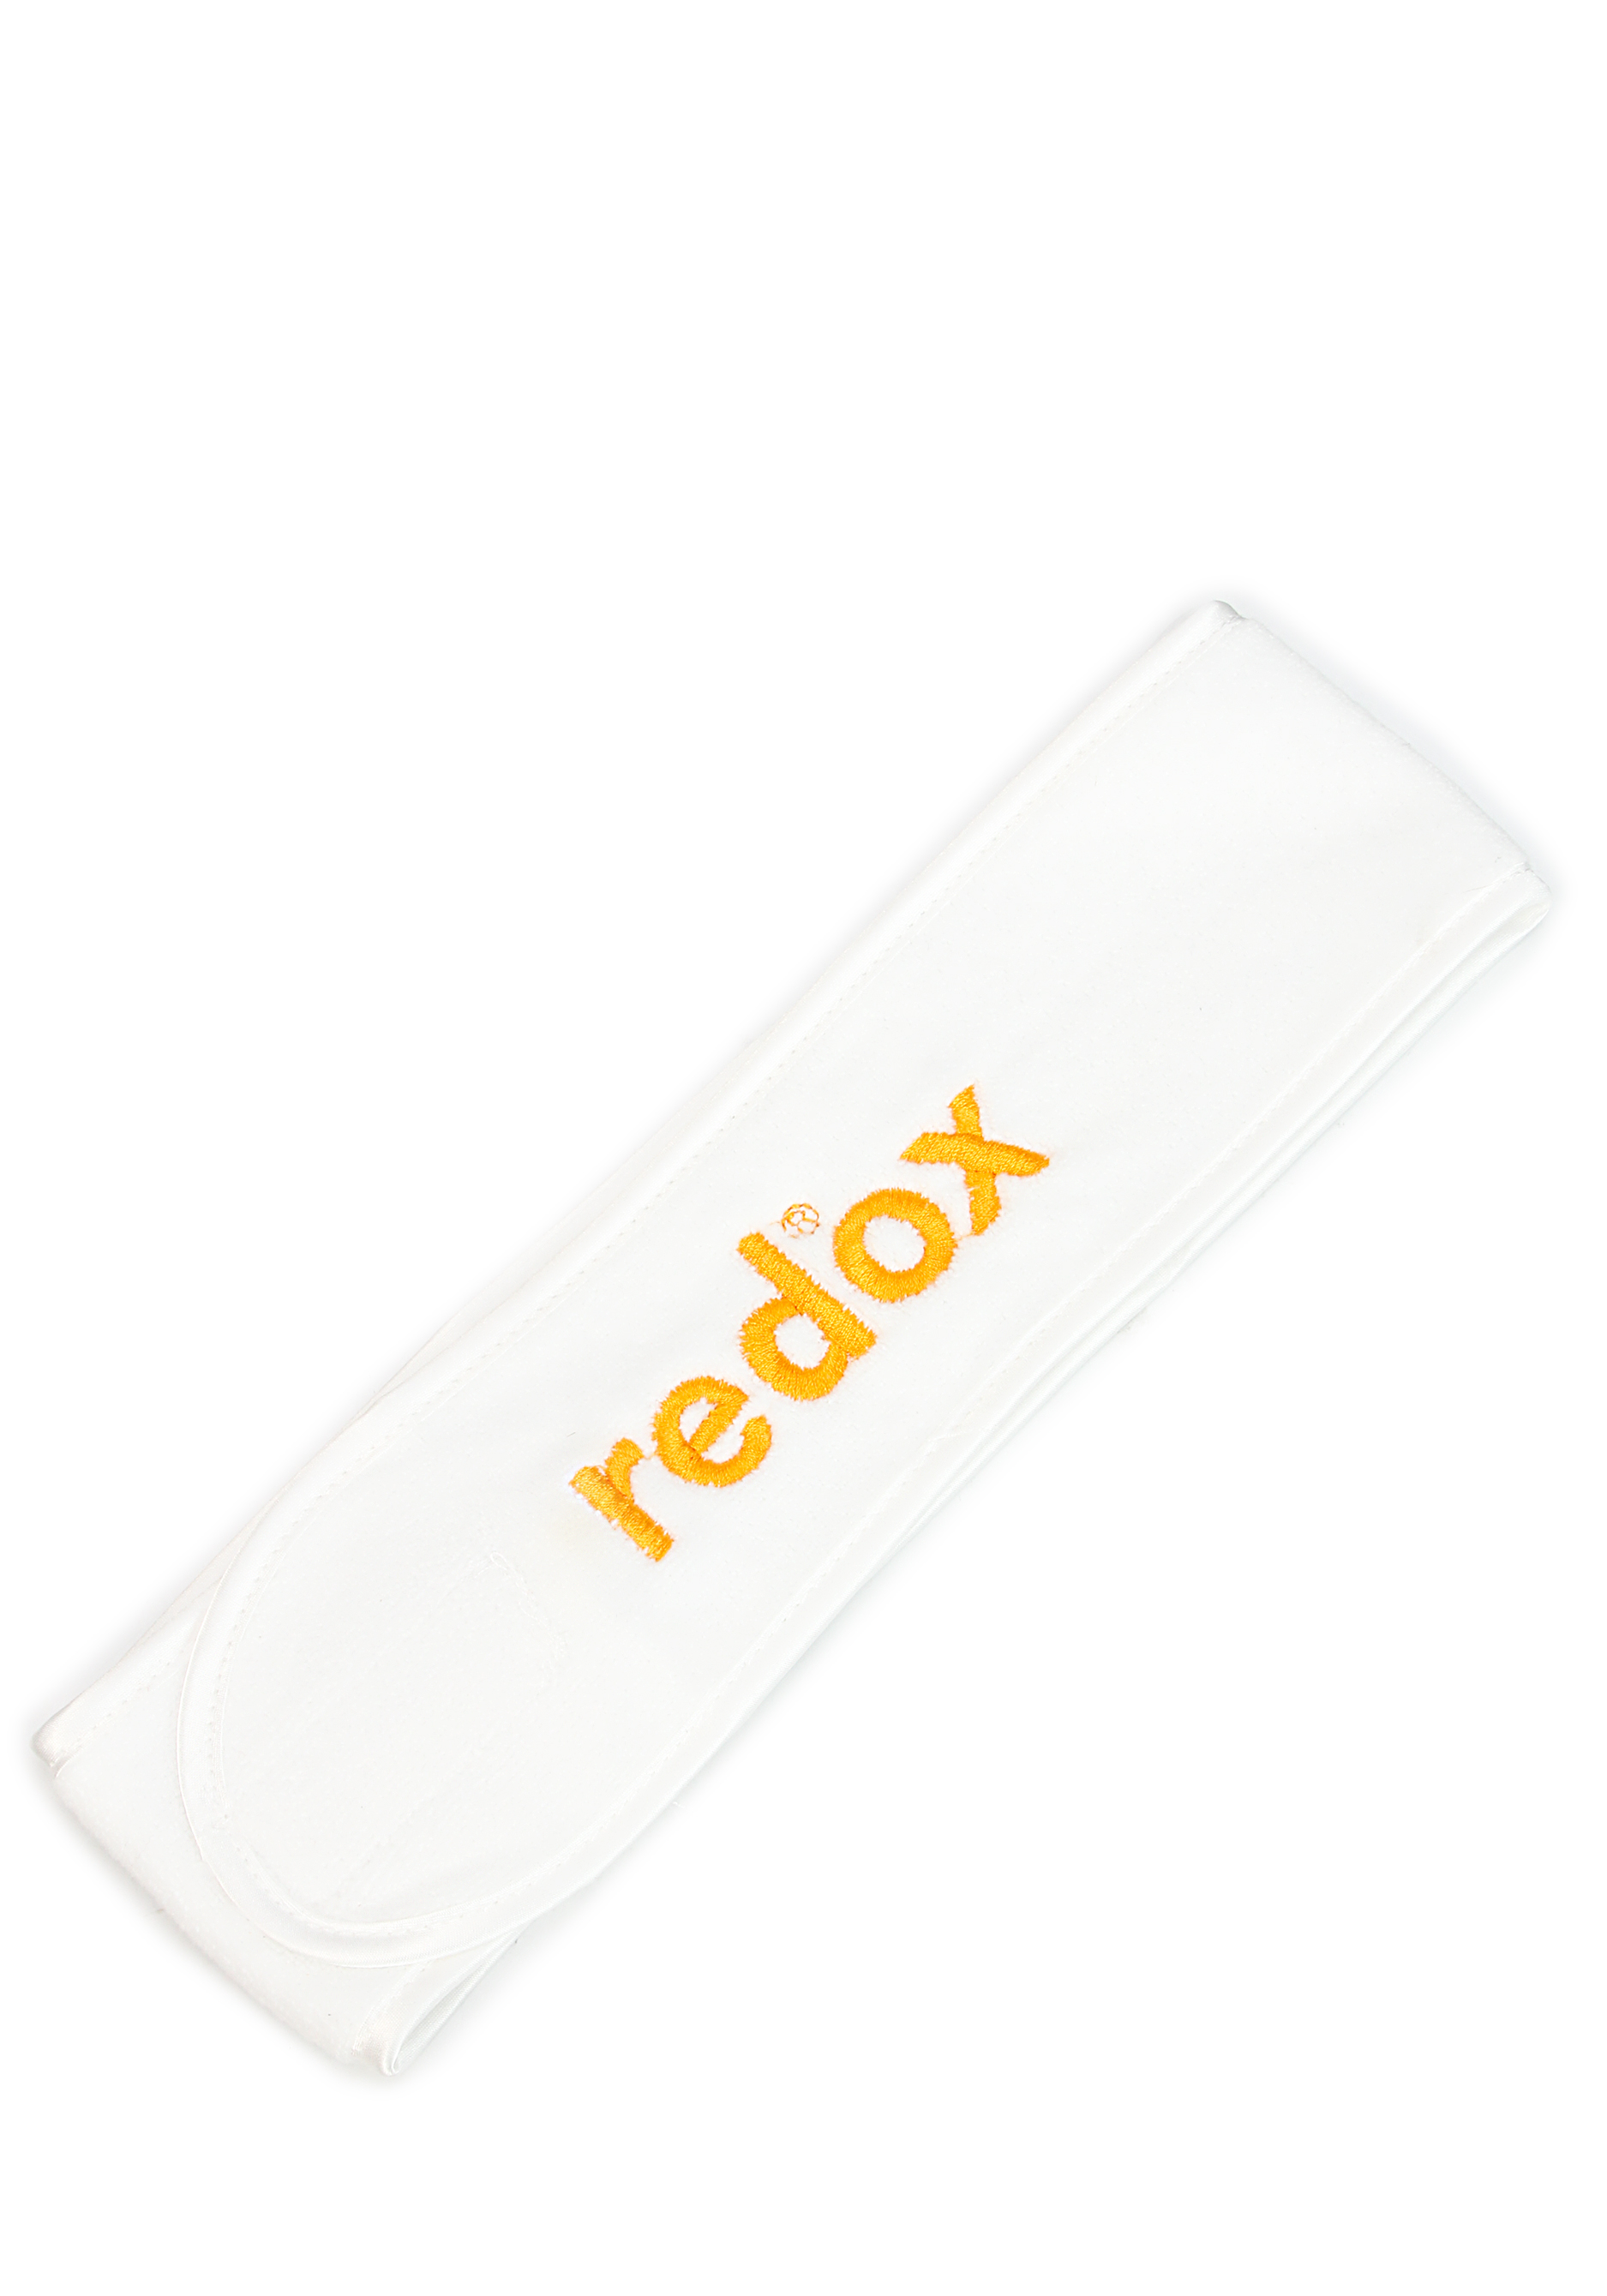 Косметическая повязка для волос Редокс Redox - фото 4